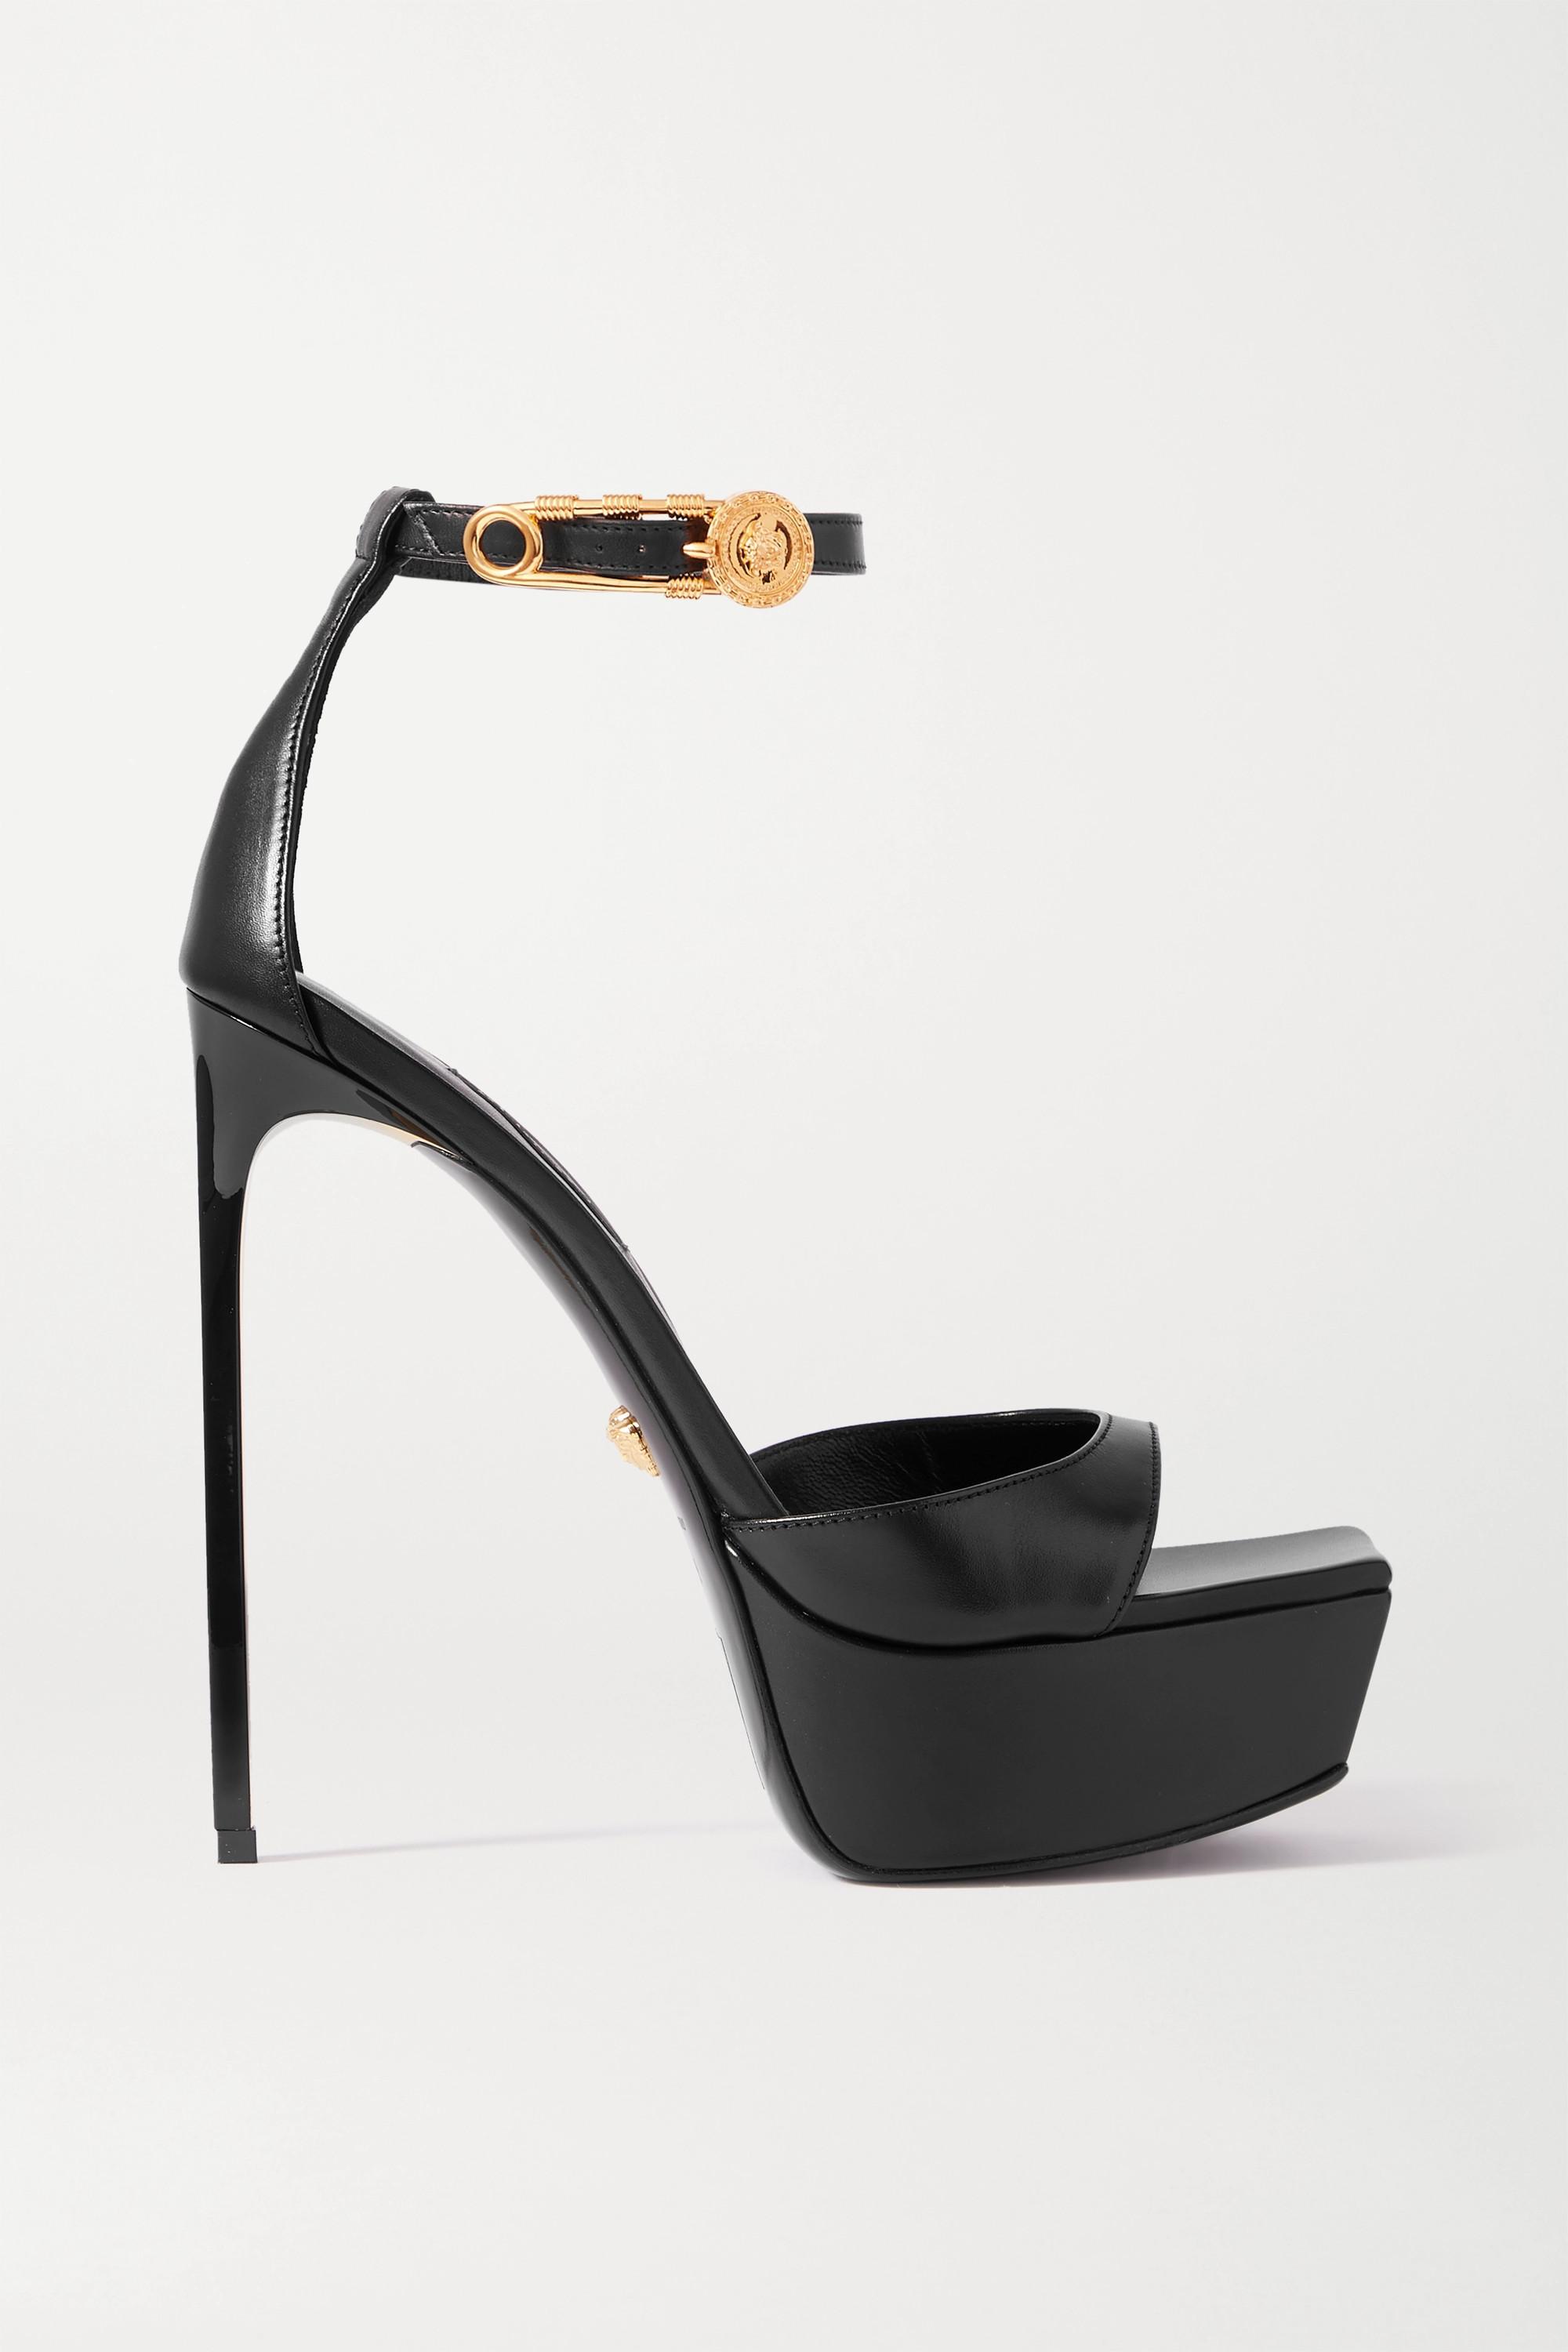 Versace Embellished Leather Platform Sandals in Black | Lyst Canada